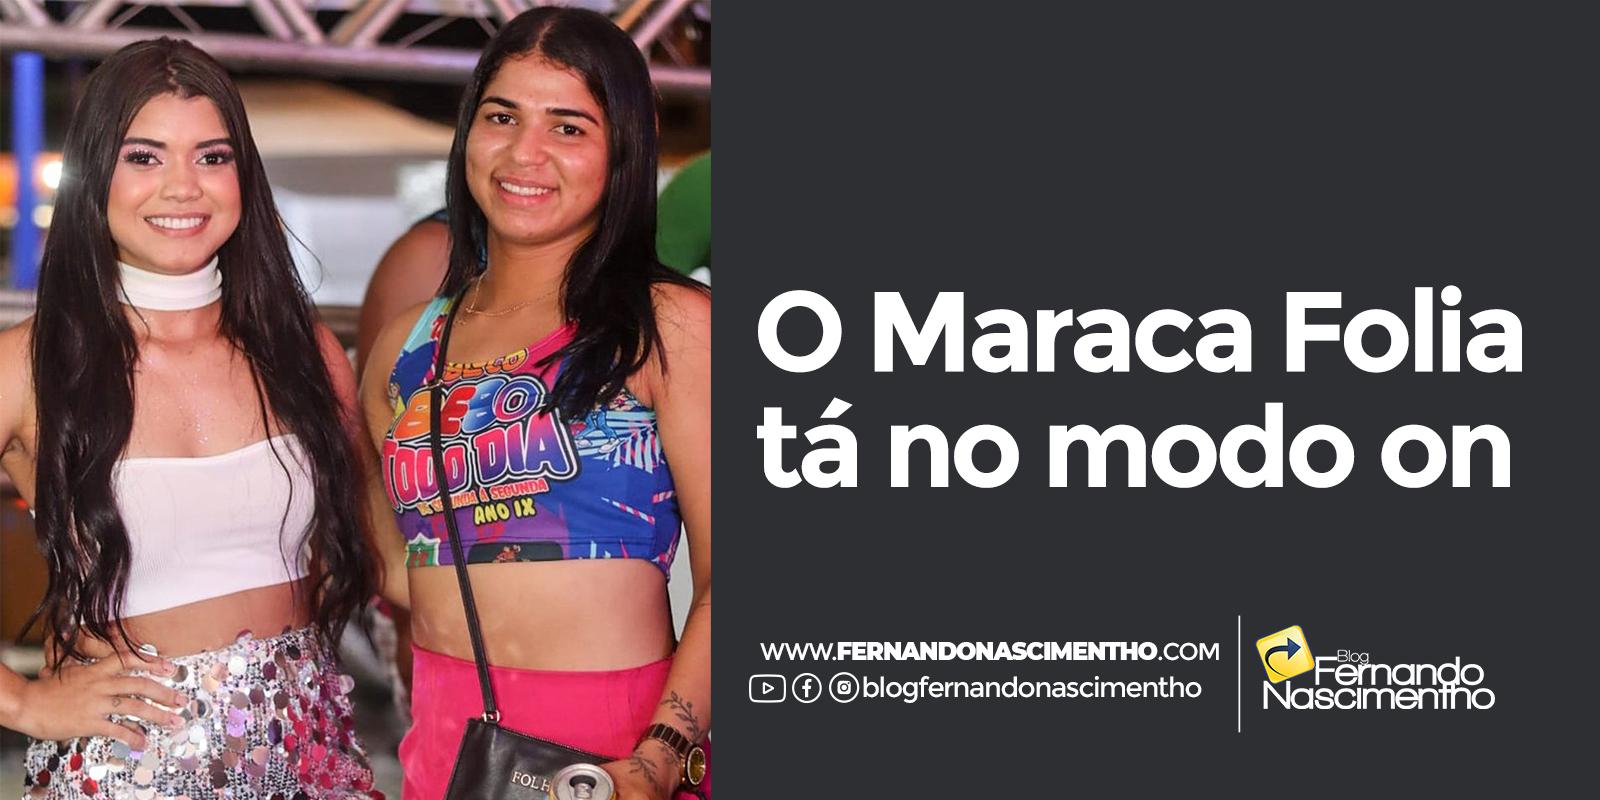 Primeira noite do Maraca Folia marca valorização da cultura maracaçumeense